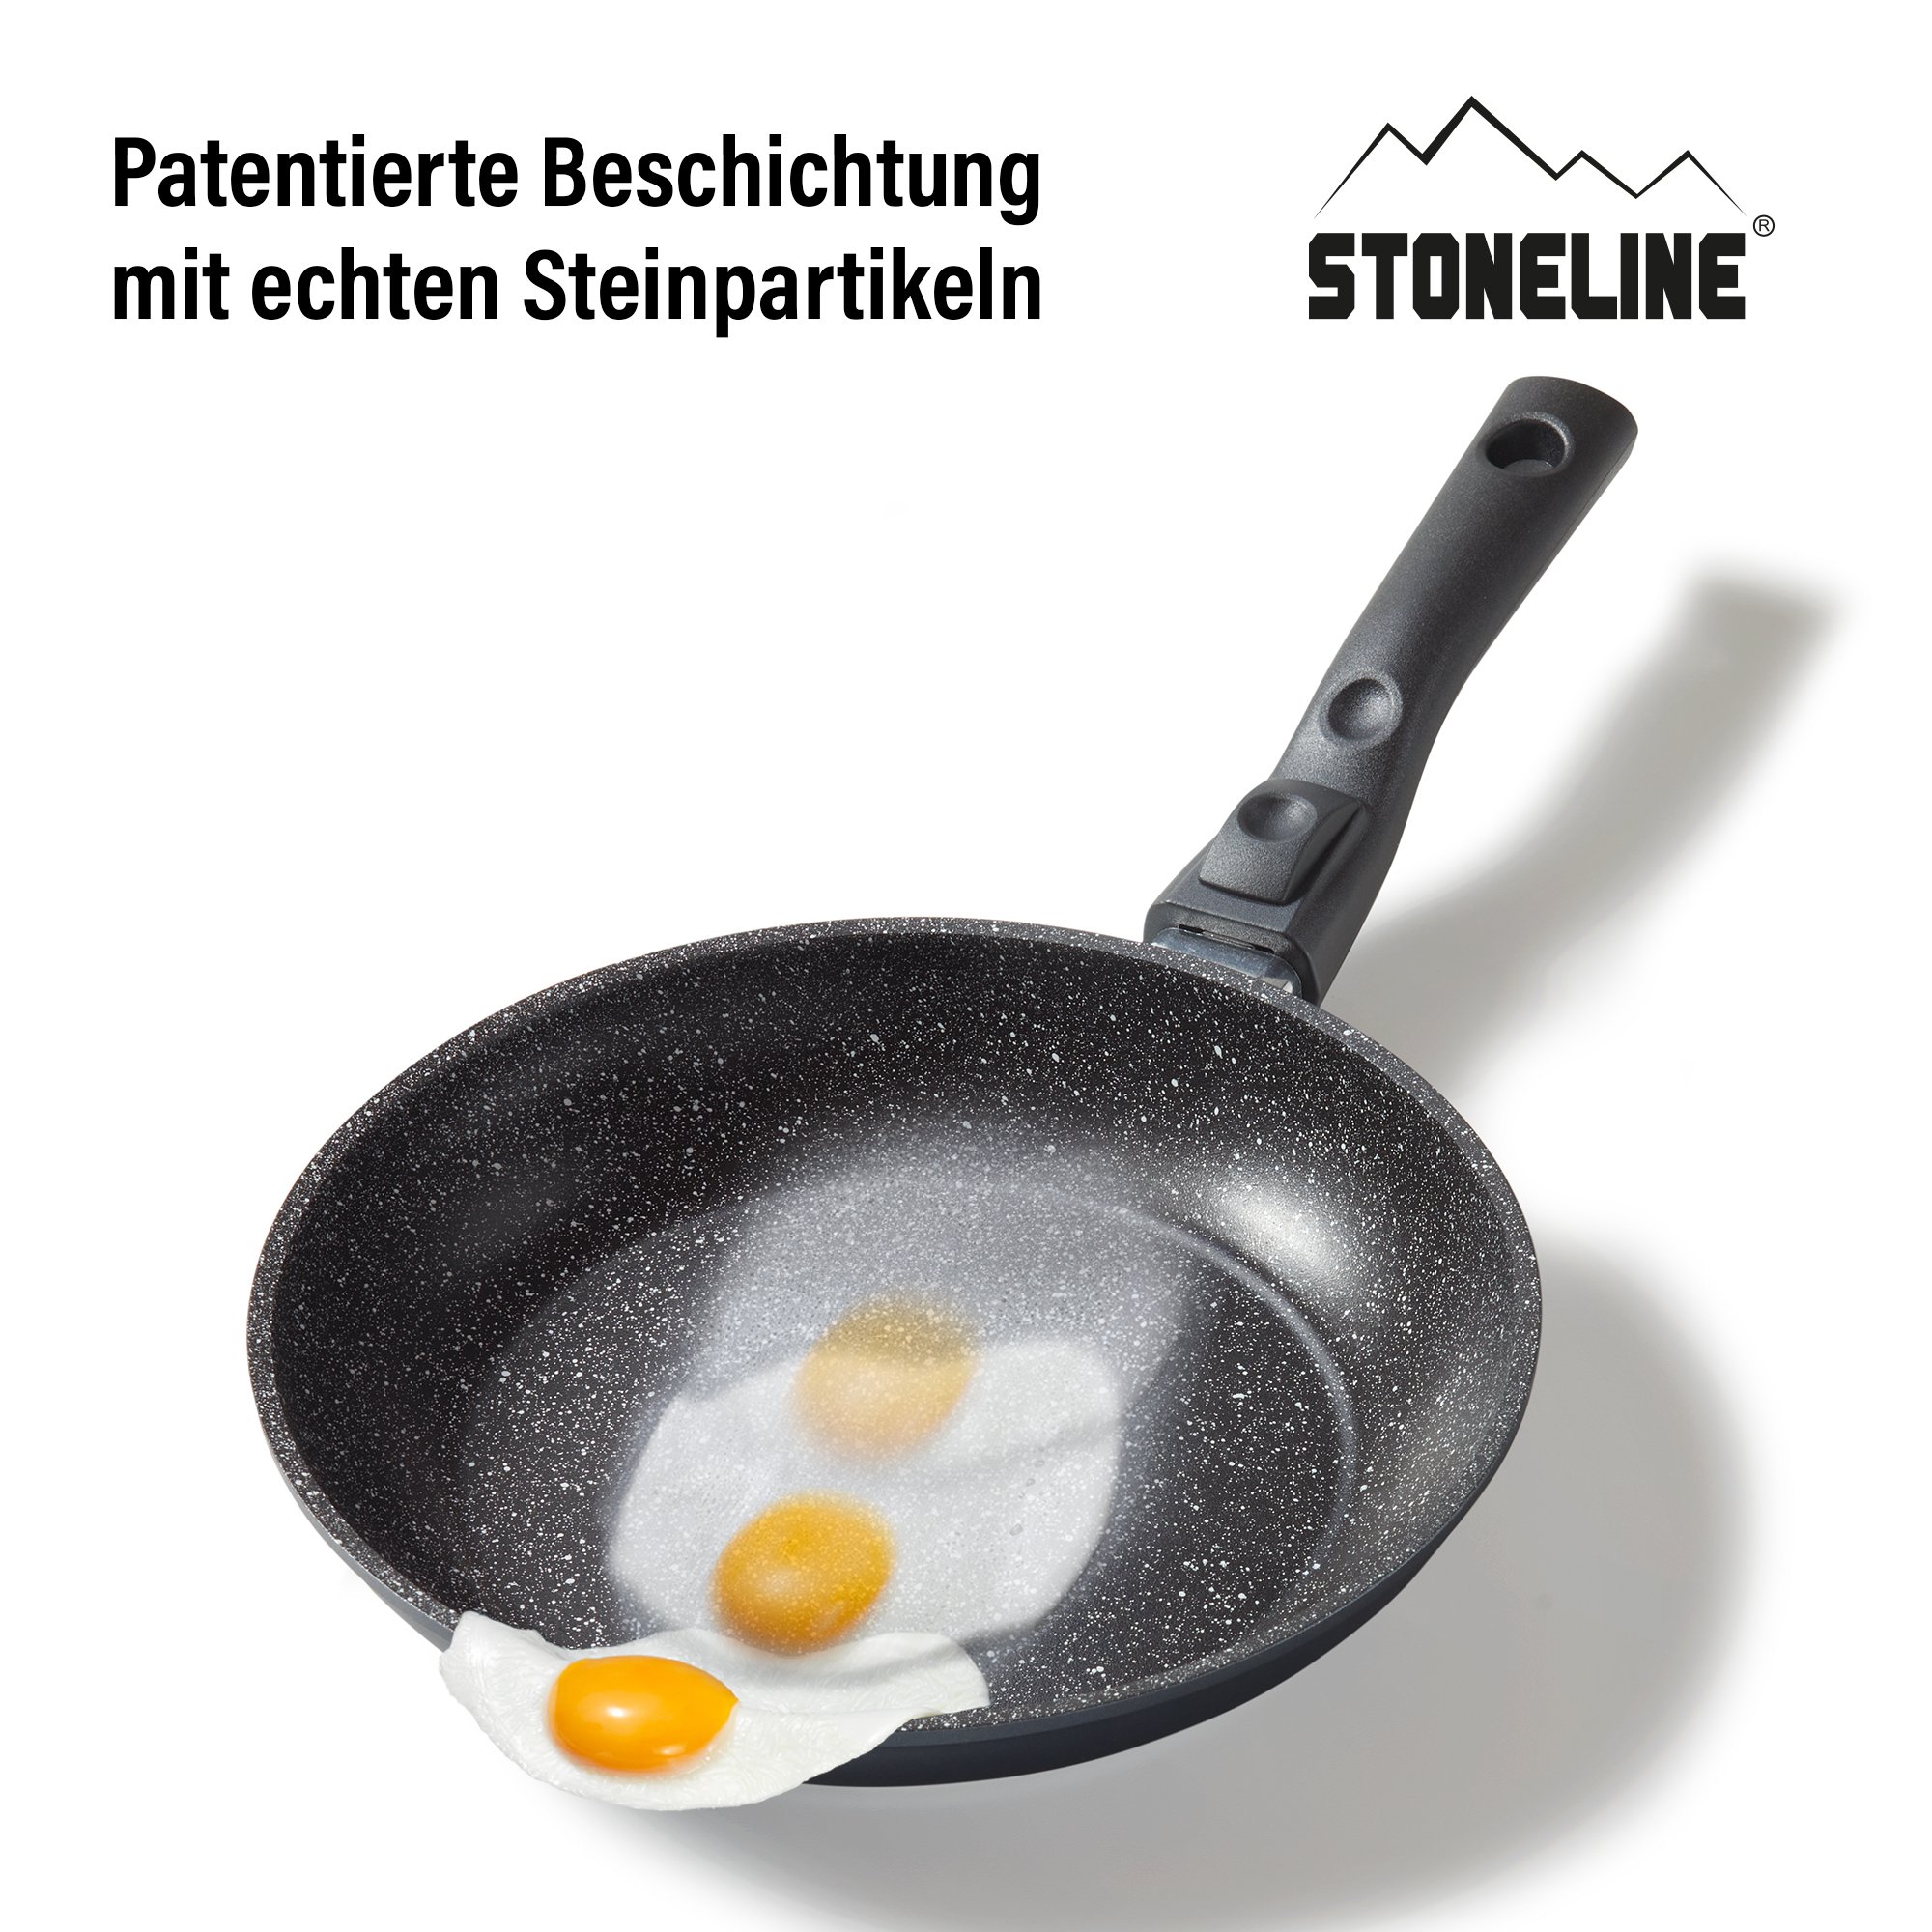 STONELINE® sartén 24 cm, Made in Germany con mango extraíble, inducción y recubrimiento antiadherente